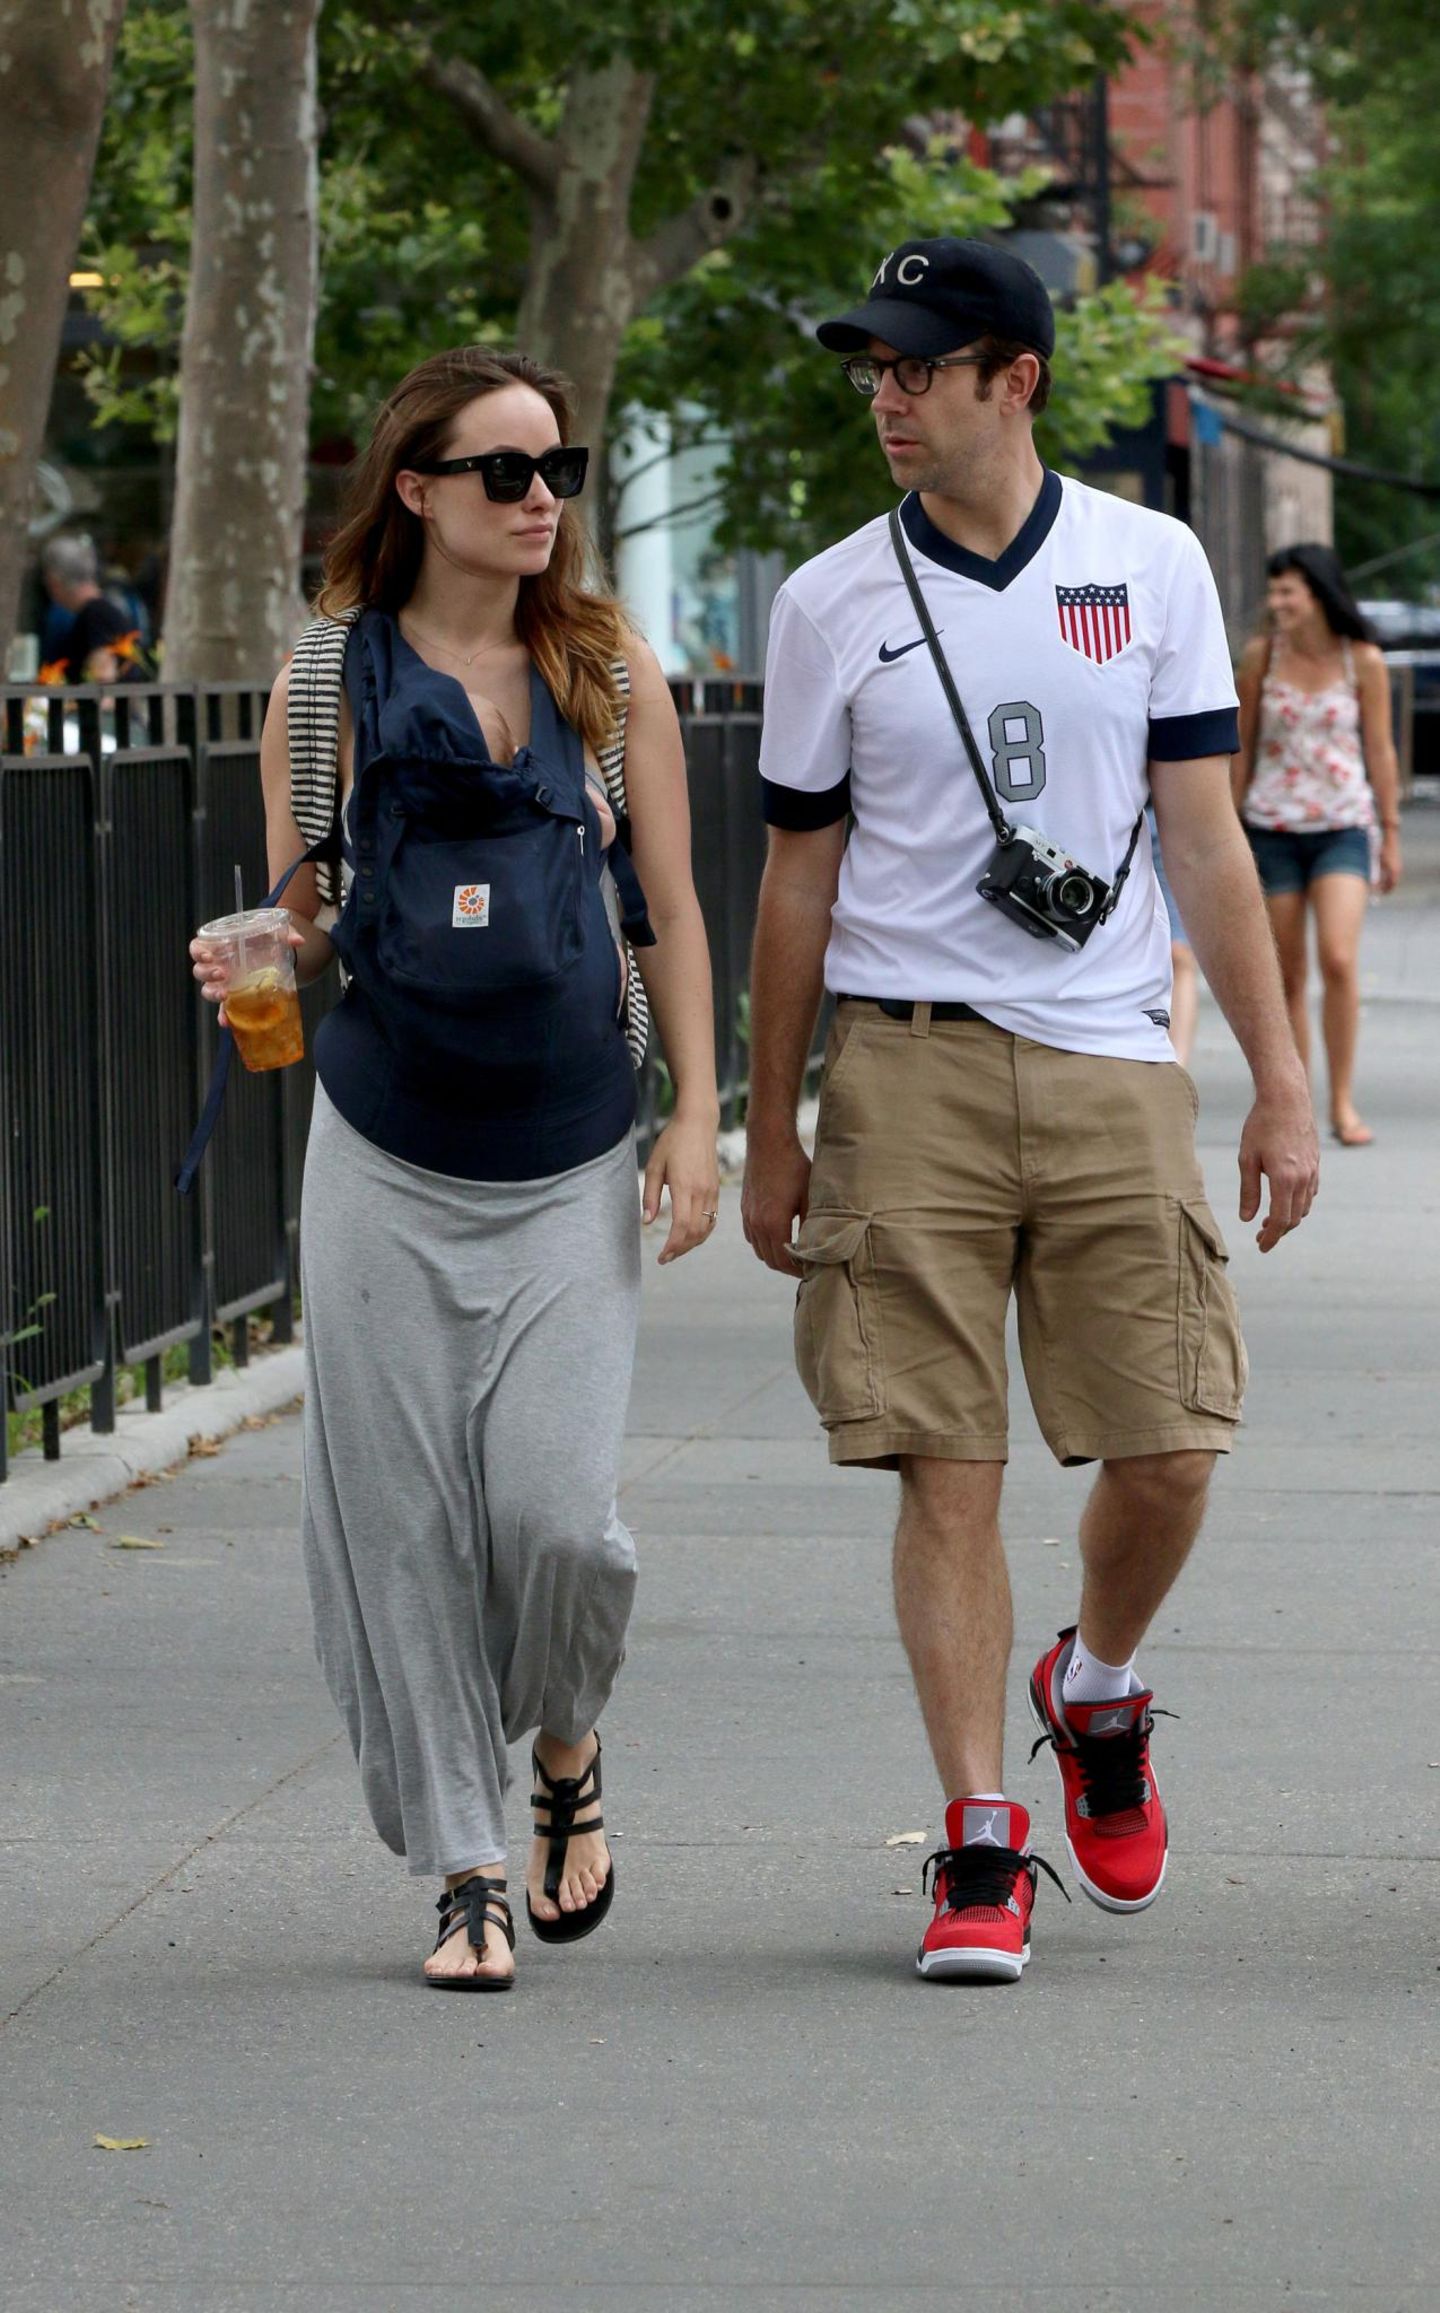 Jason Sudeikis trägt beim gemeinsamen Spaziergang mit Olivia Wilde und Baby ein Trikot der U.S. Mannschaft.